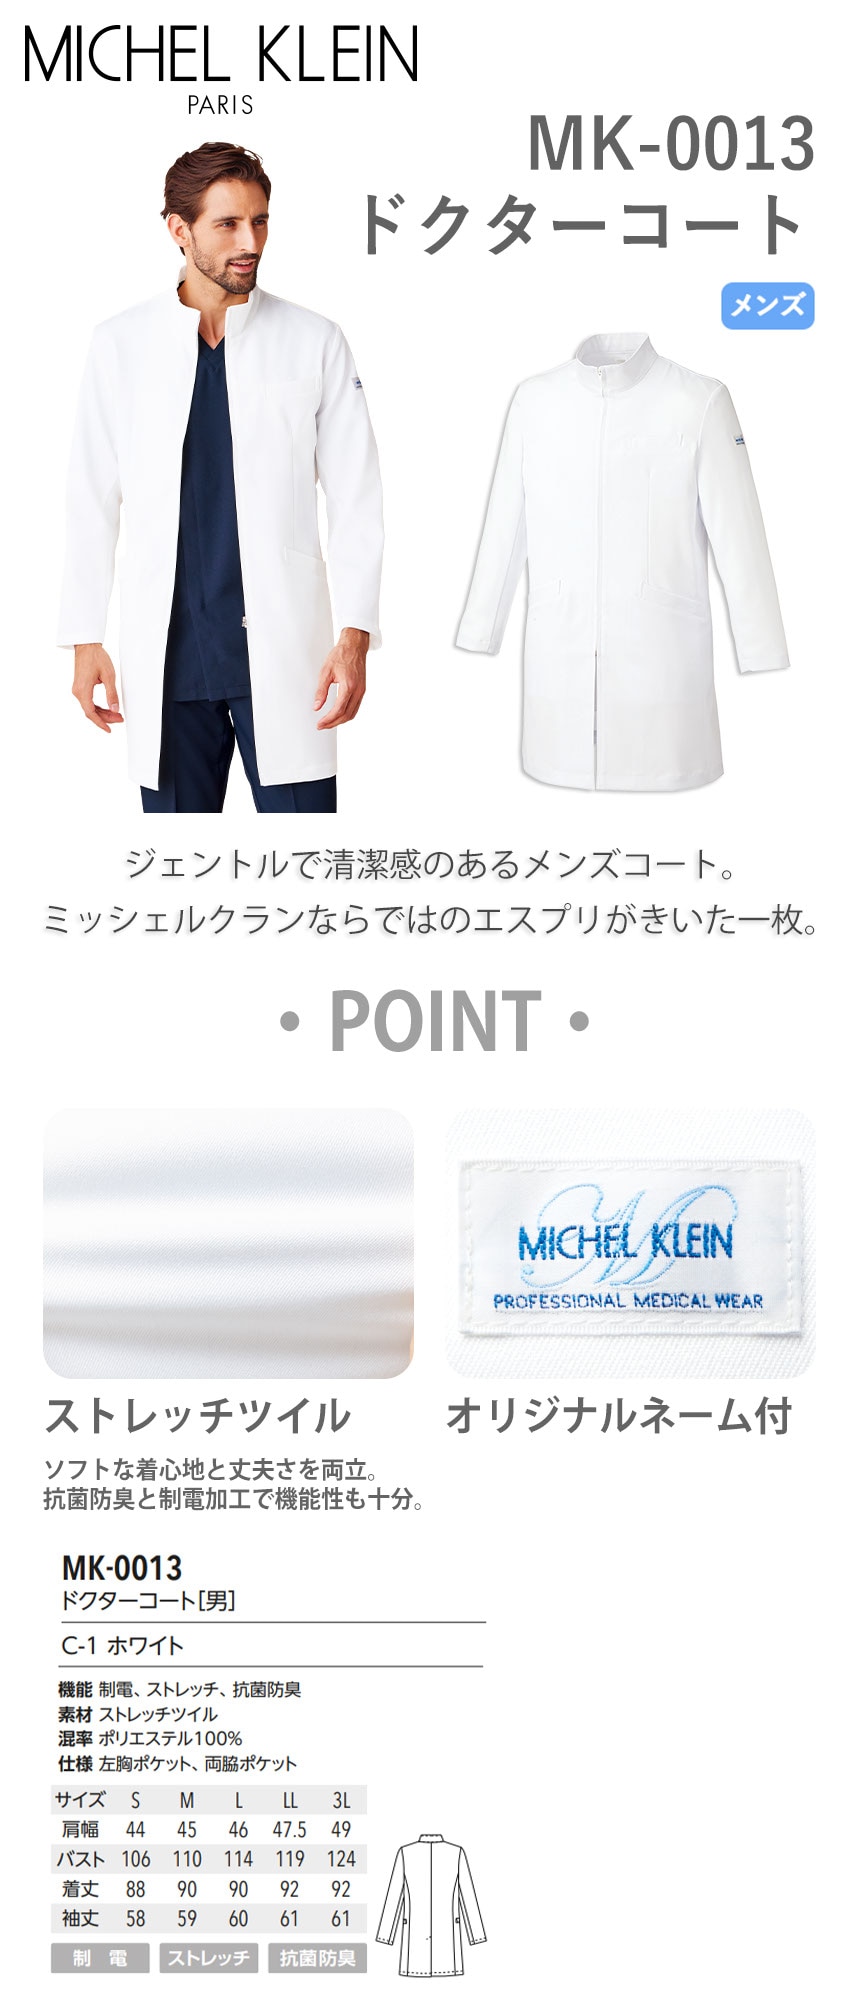 ドクターコート 長袖 MICHEL KLEIN ミッシェルクラン MK-0013 白衣